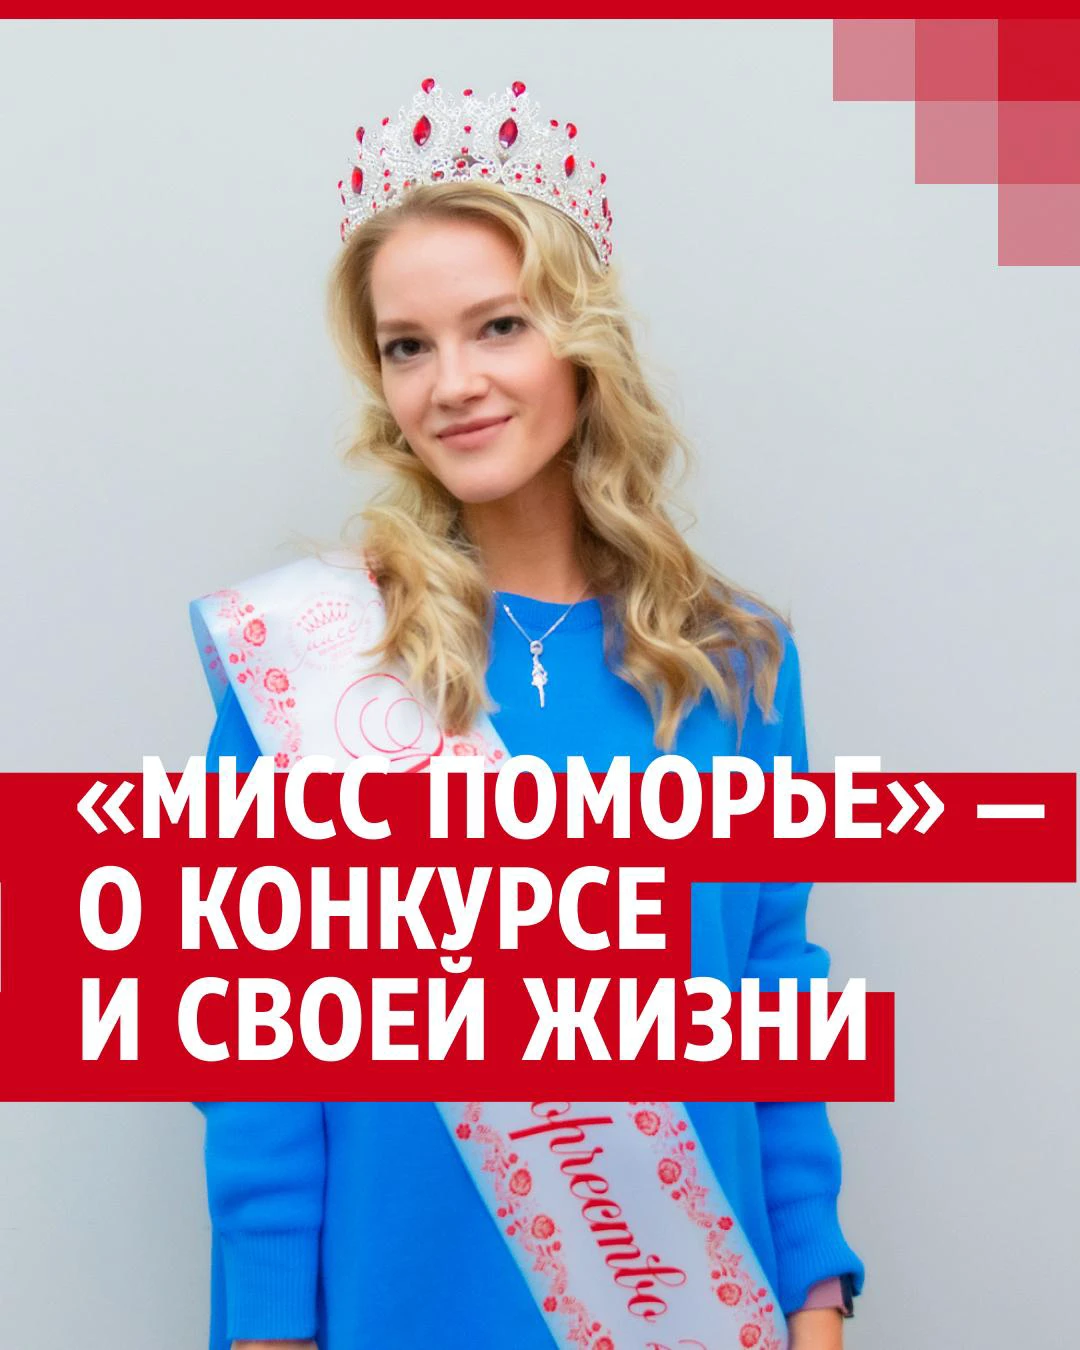 Скандал вокруг 14-летней «Мисс Татарстан» догоняет «голую вечеринку»